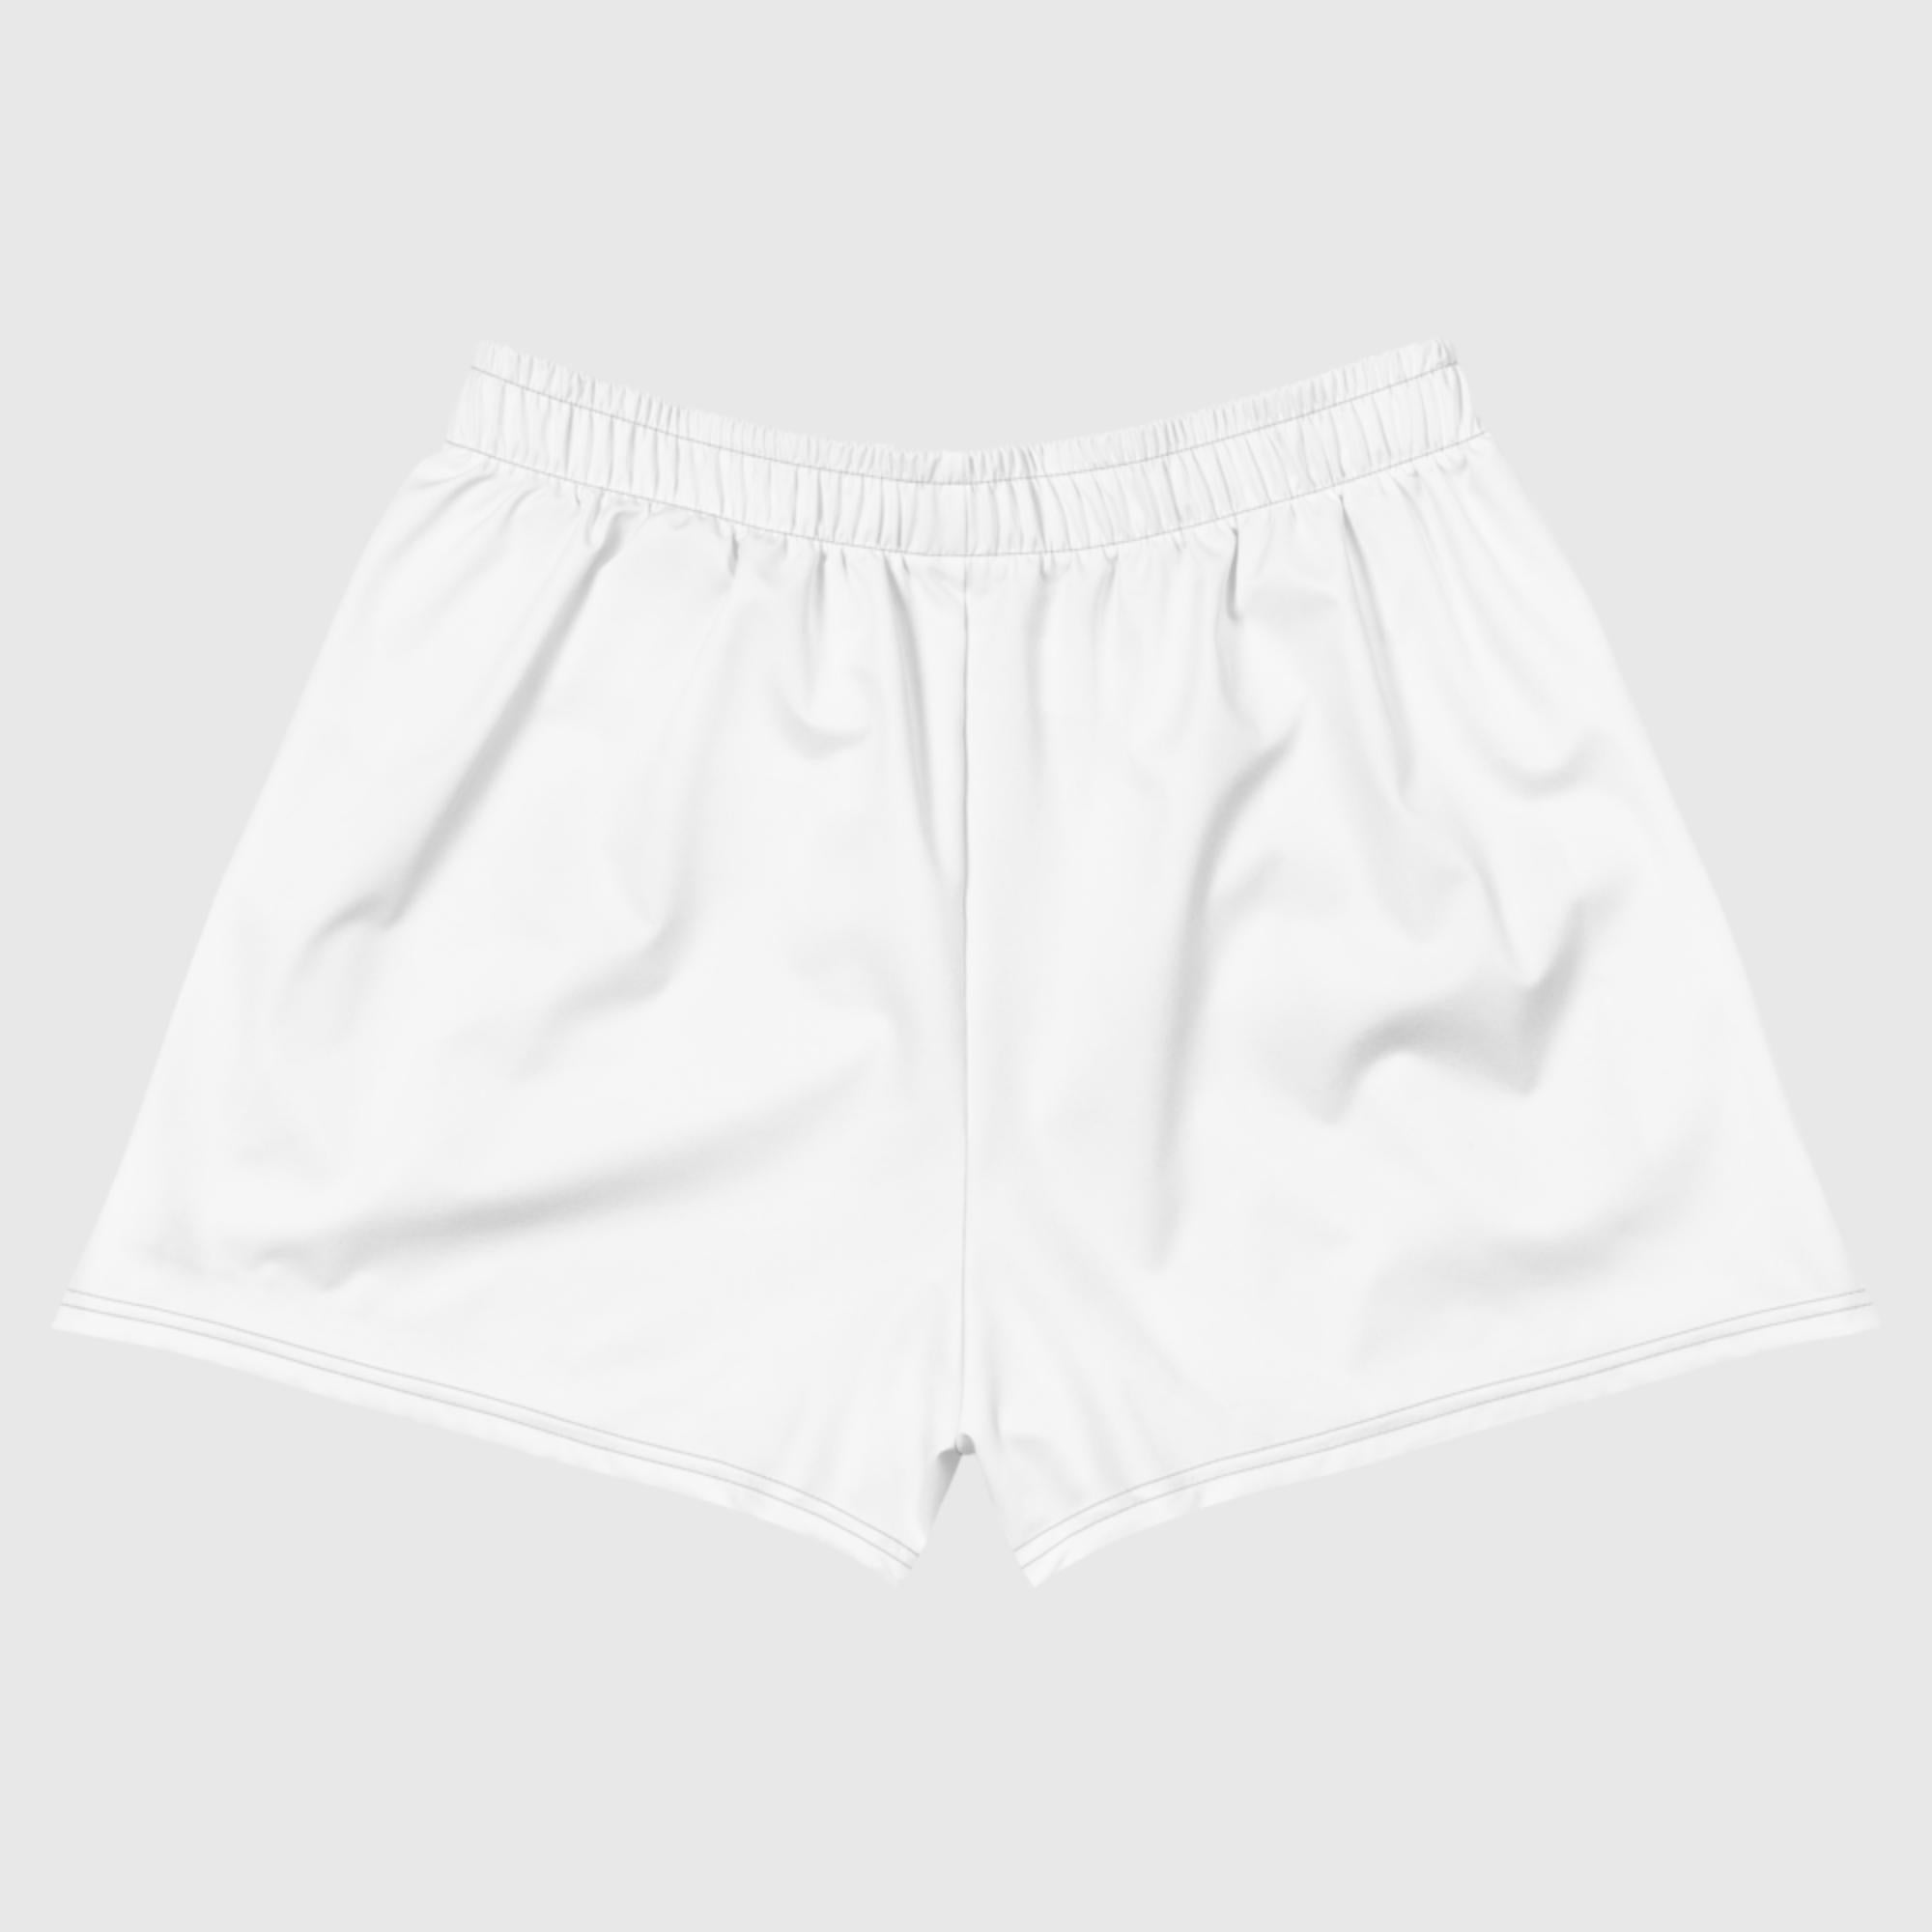 Women's Athletic Short Shorts - White - Sunset Harbor Clothing